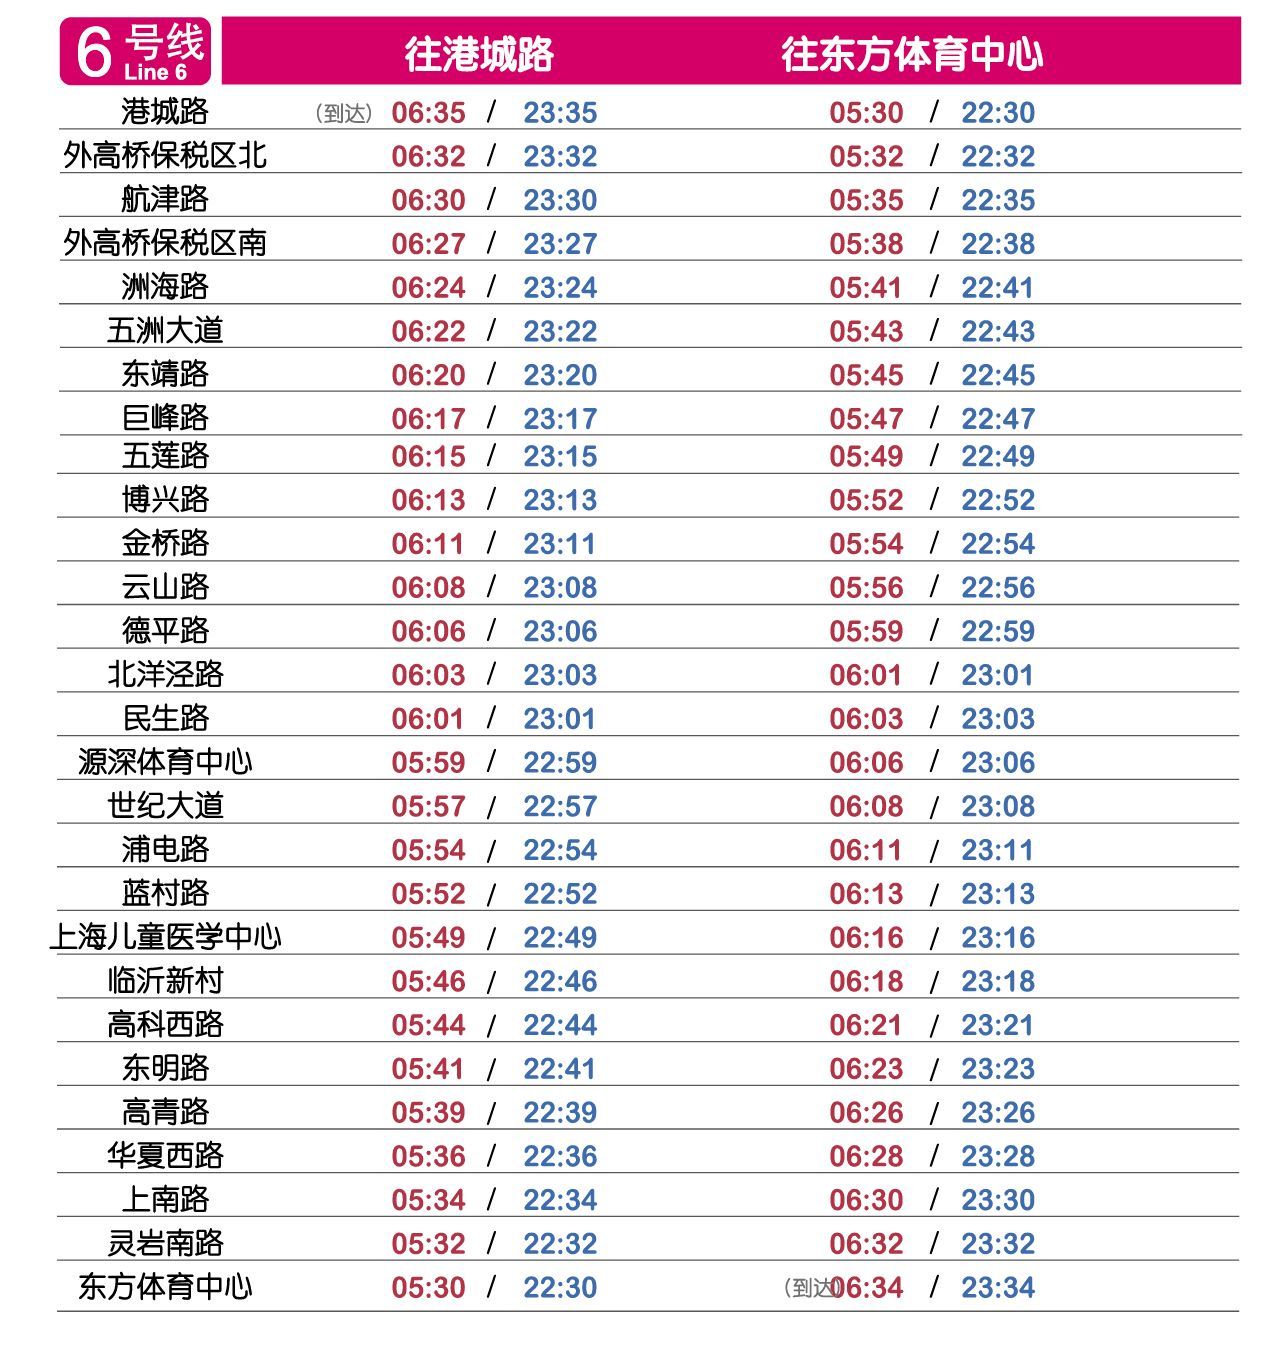 15条上海地铁「首末班车时刻表」公布,果断收藏!